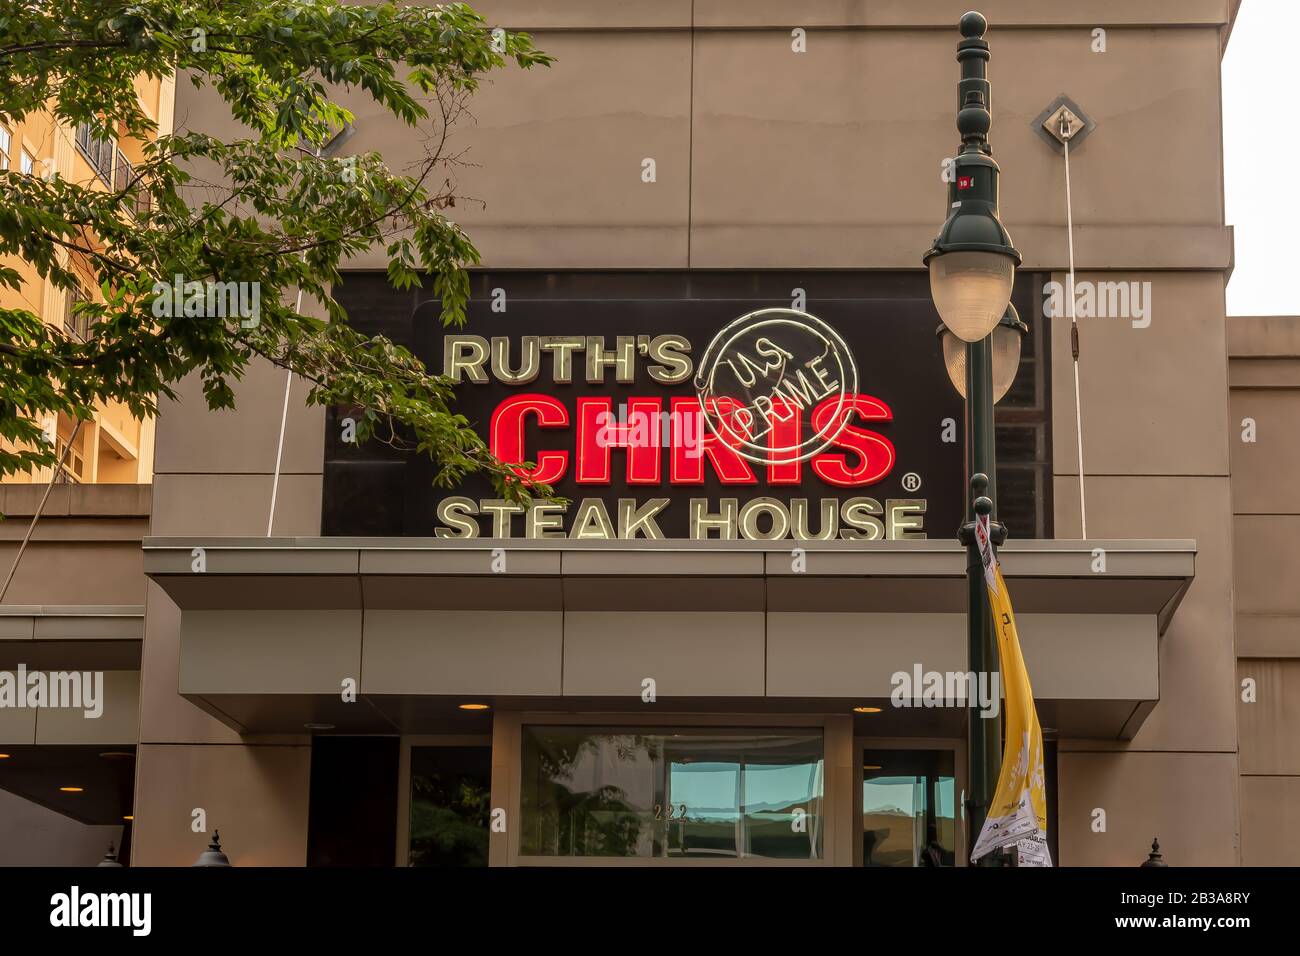 Charlotte, NC/USA - 26. Mai 2019: Mittlere Nahaufnahme der Steakhausfassade "Ruth's Chris" mit einer Marke über dem Eingang mit Lampenpfosten und Baumzweigen. Stockfoto